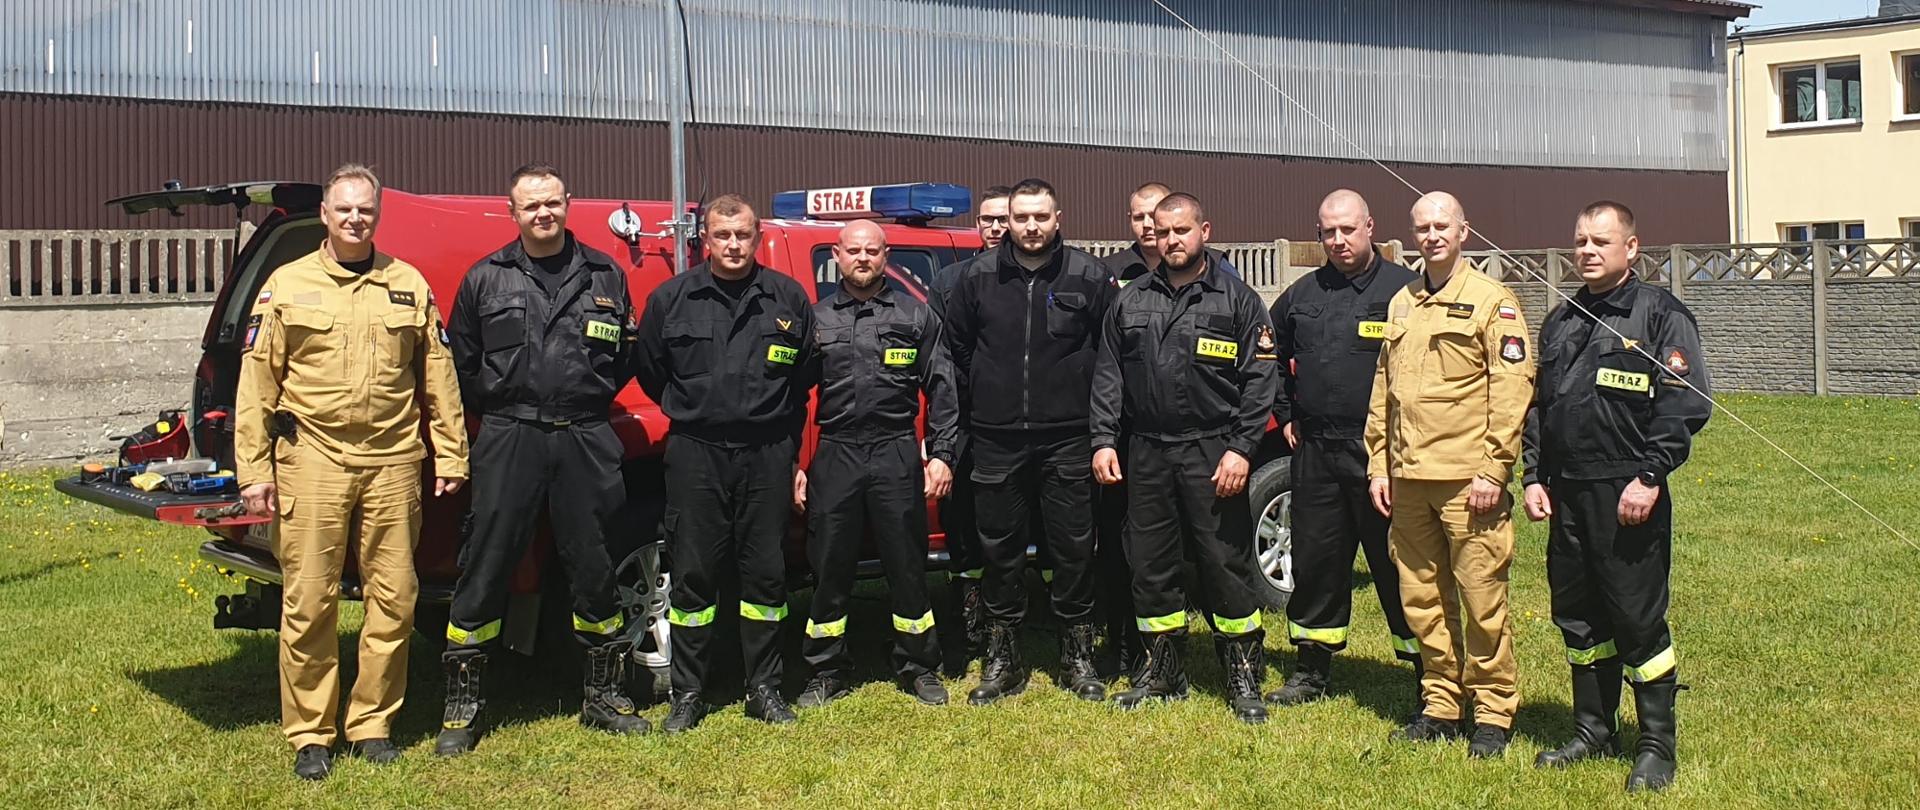 Grupowe zdjęcie osób, które ukończyły szkolenie wraz z osobami egzaminującymi na tle samochodu z JRG Skarżysko-Kamienna.